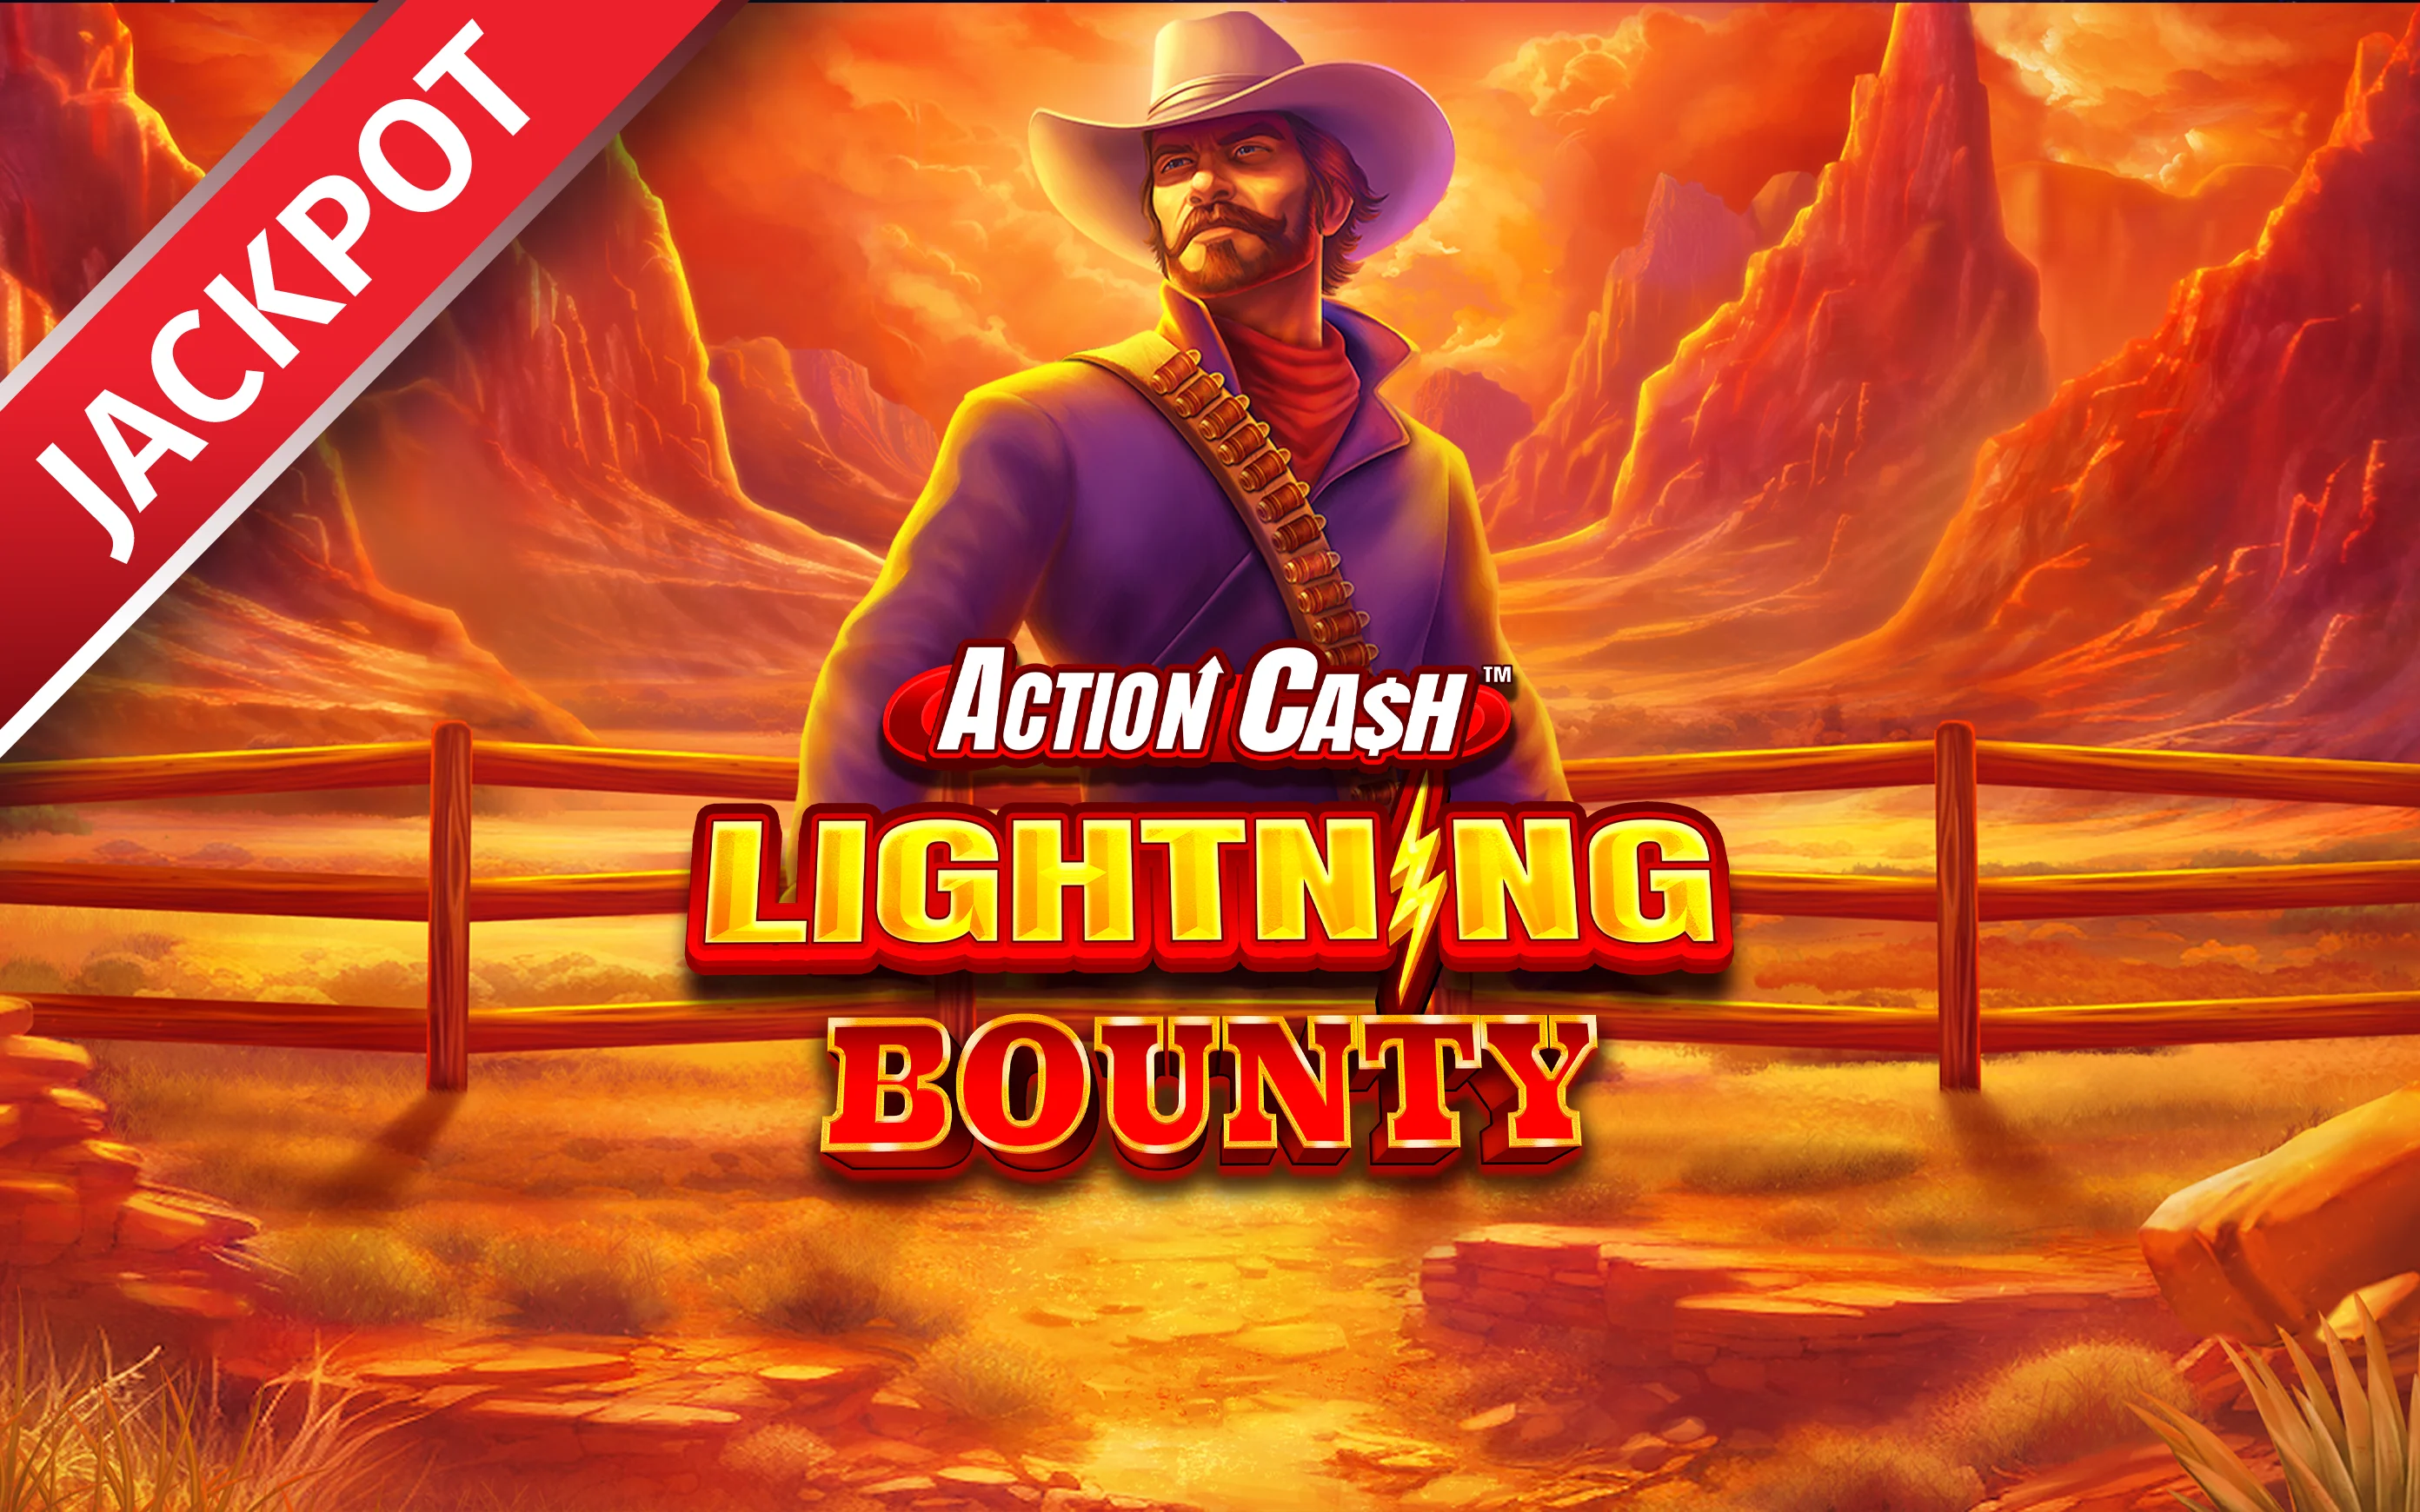 เล่น Action Cash™ Lightning Bounty บนคาสิโนออนไลน์ Starcasino.be